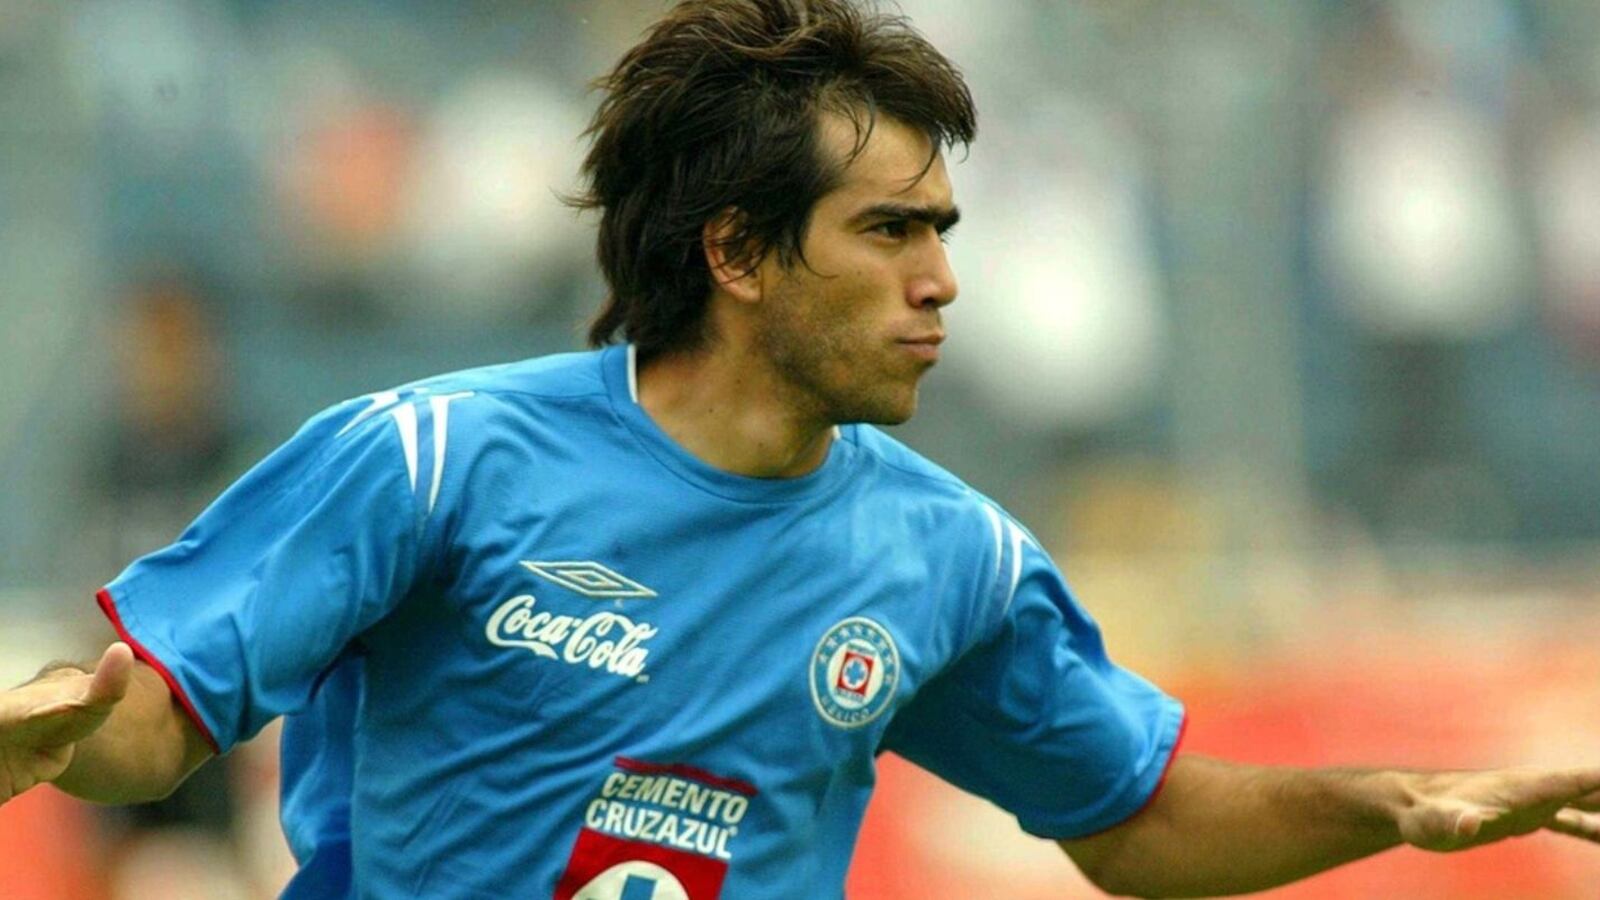 El nuevo trabajo del Chelito Delgado tras ser un crack en Cruz Azul y jugar en Europa